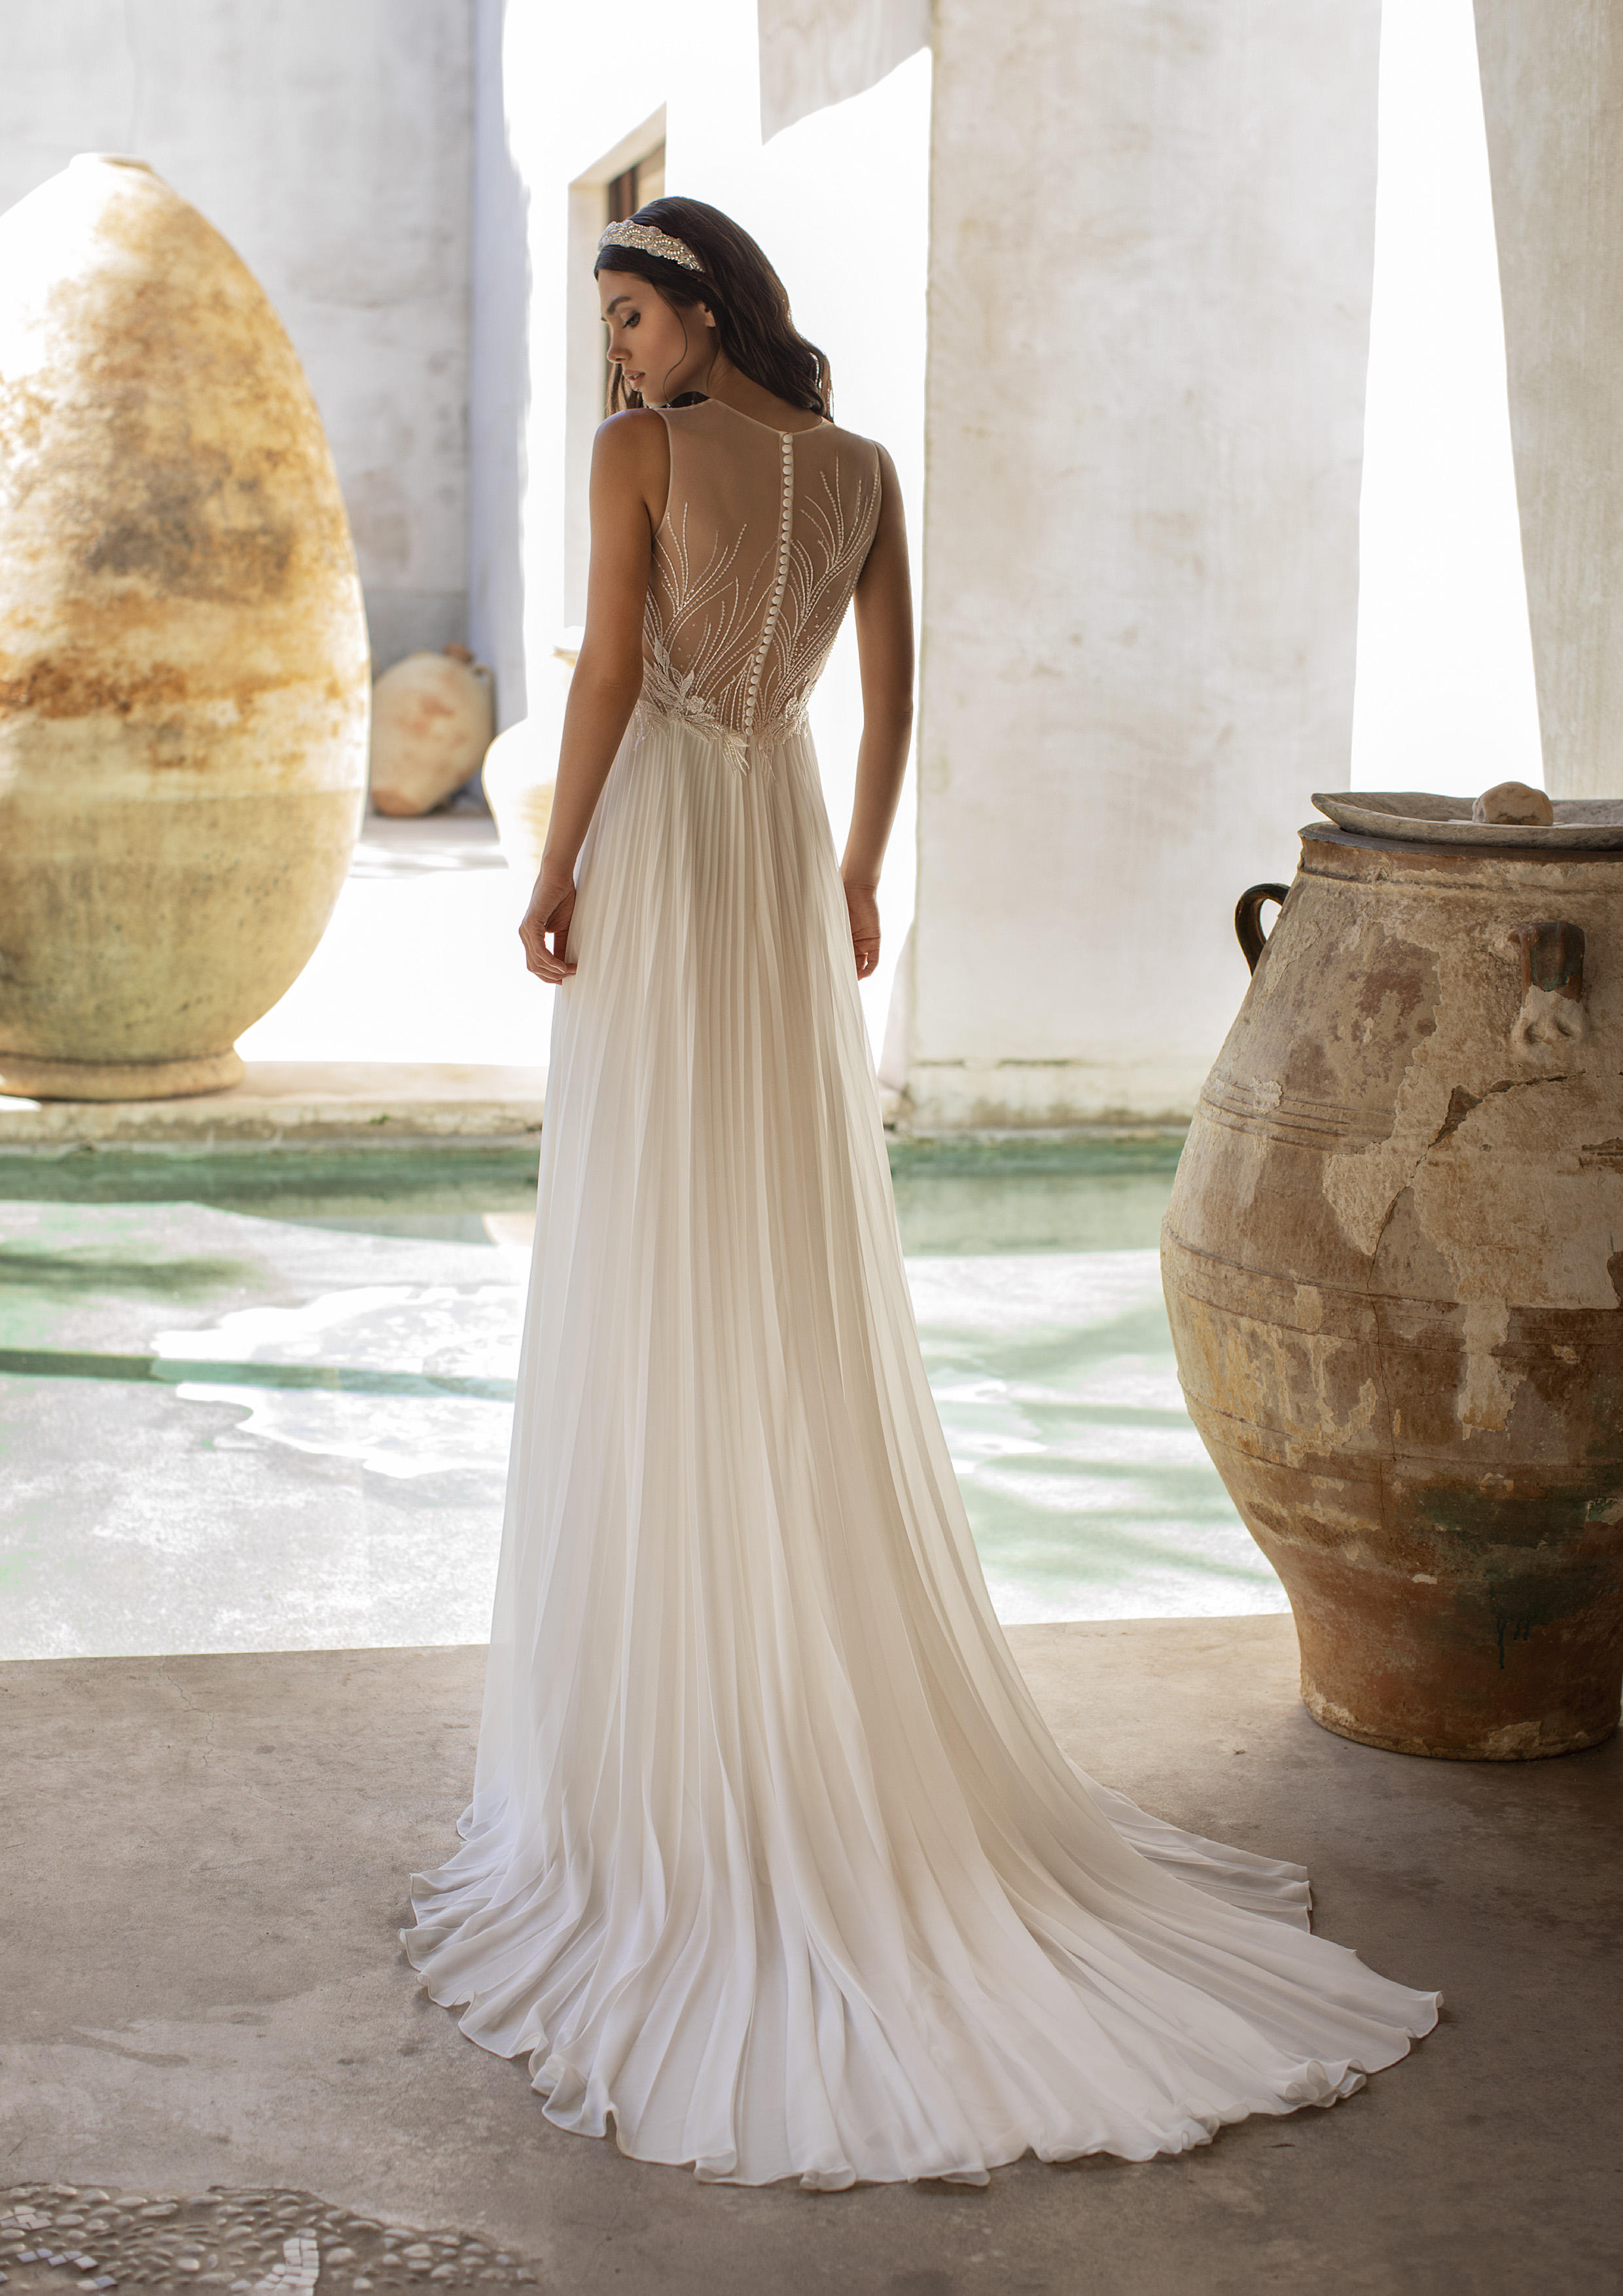 Vestido de noiva modelo Holliday da coleção Pronovias 2021 Cruise Collection